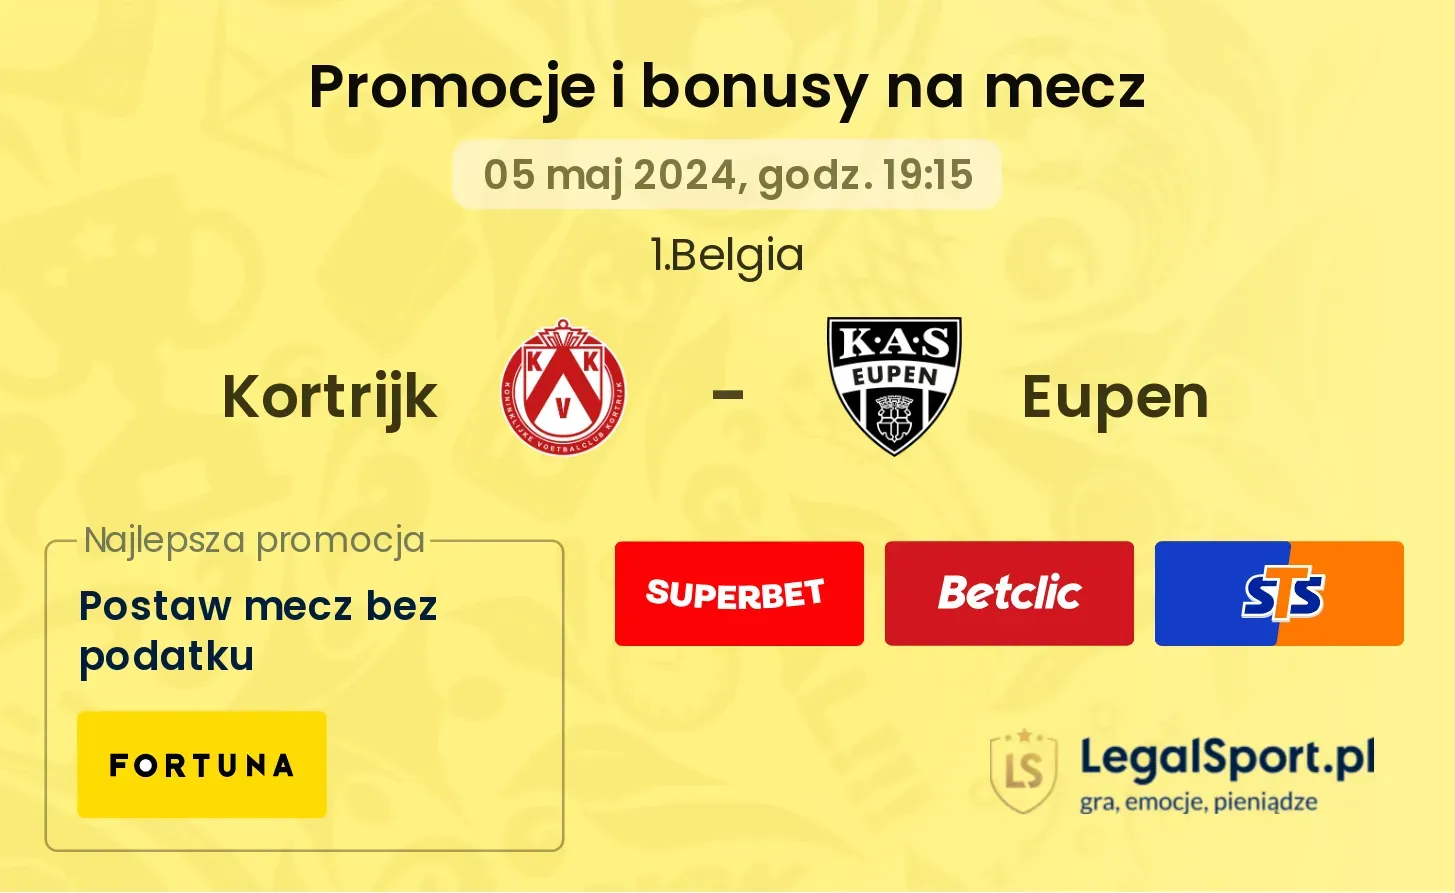 Kortrijk - Eupen promocje bonusy na mecz